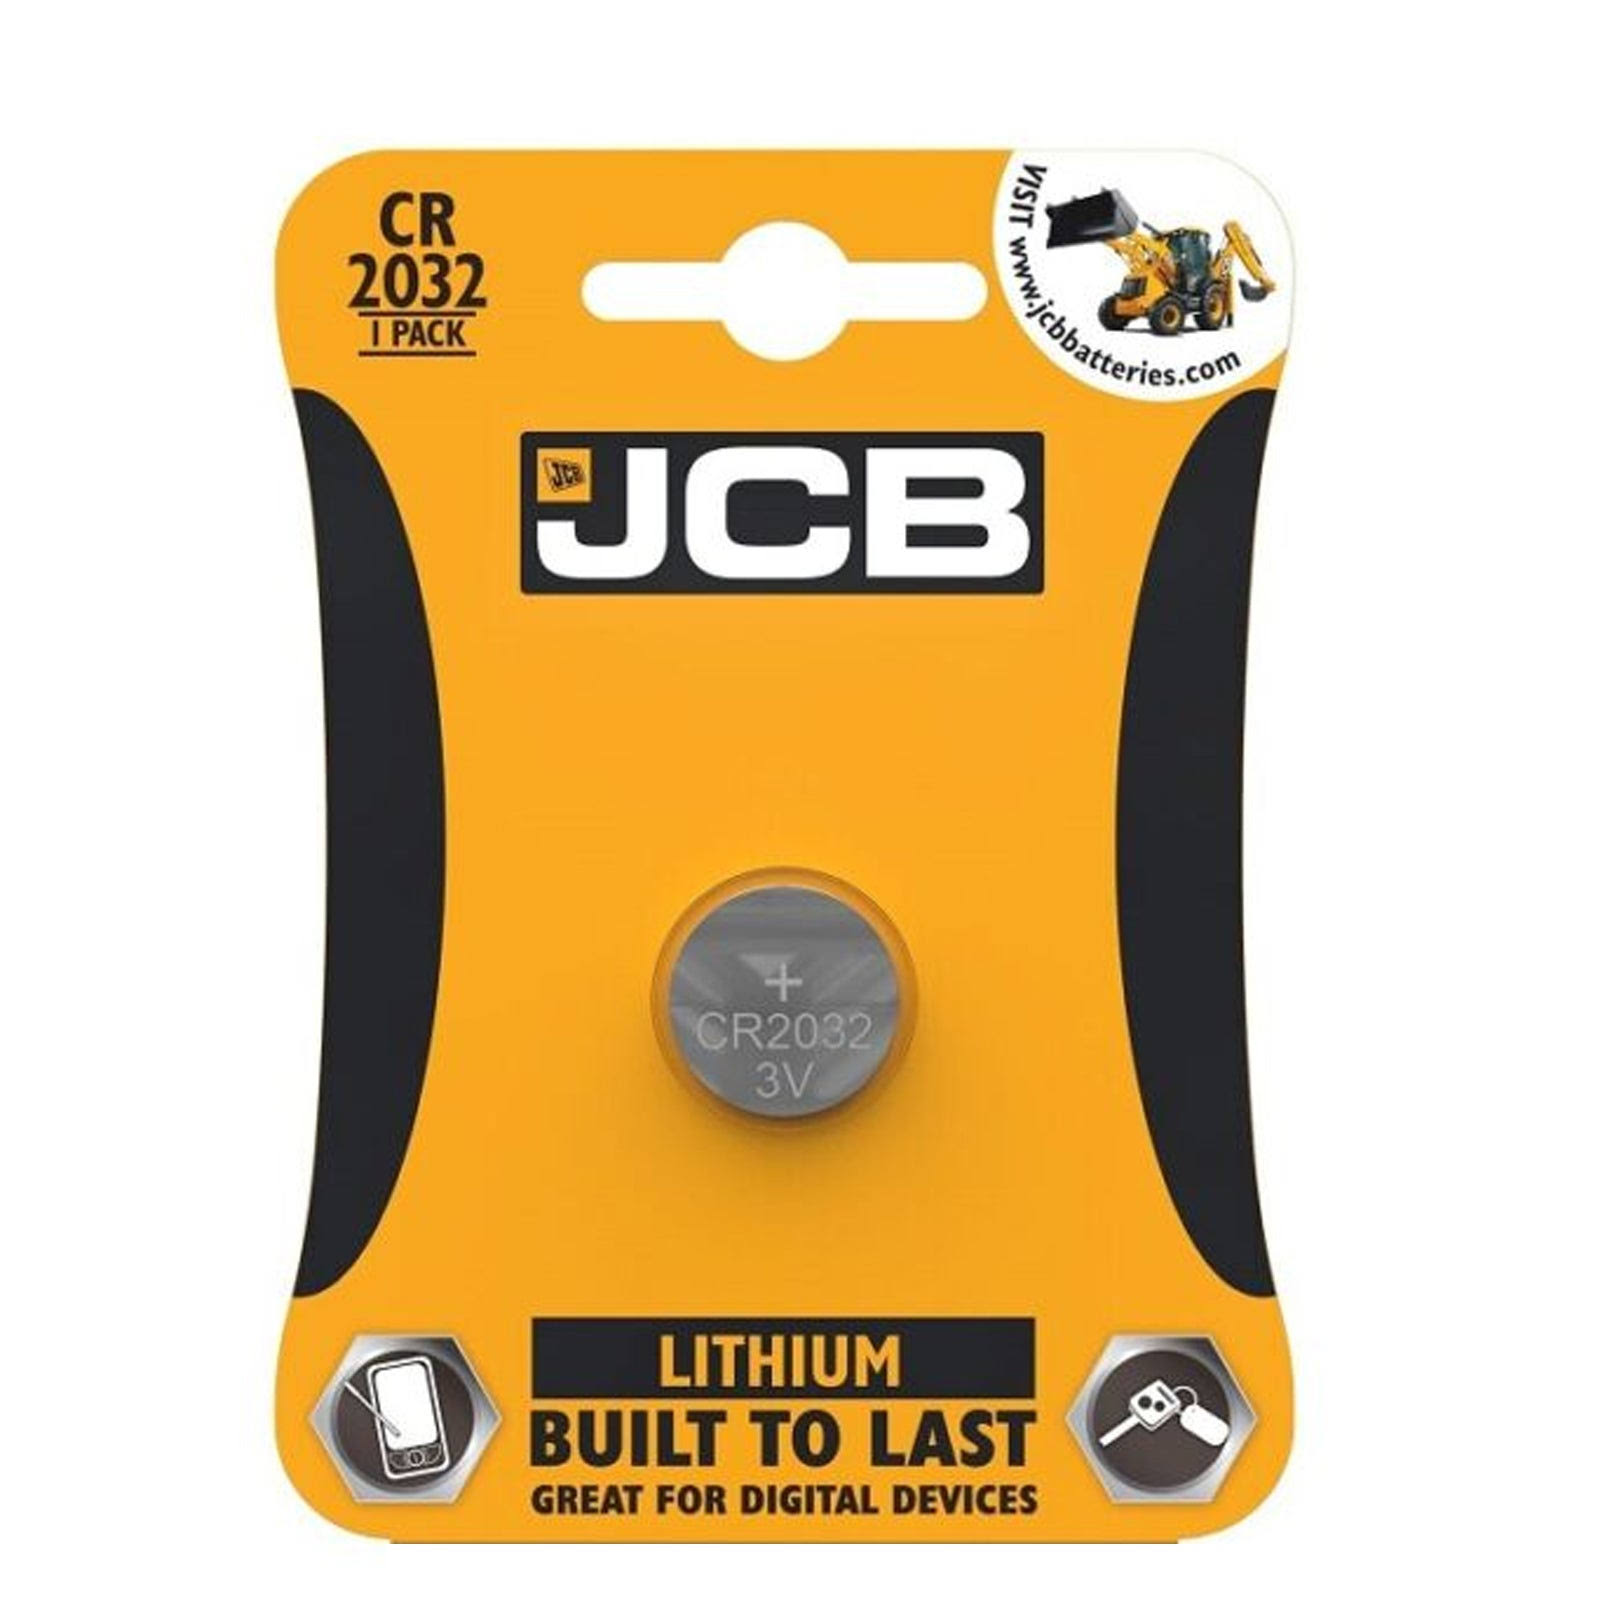 JCB Lithium Battery - CR2032